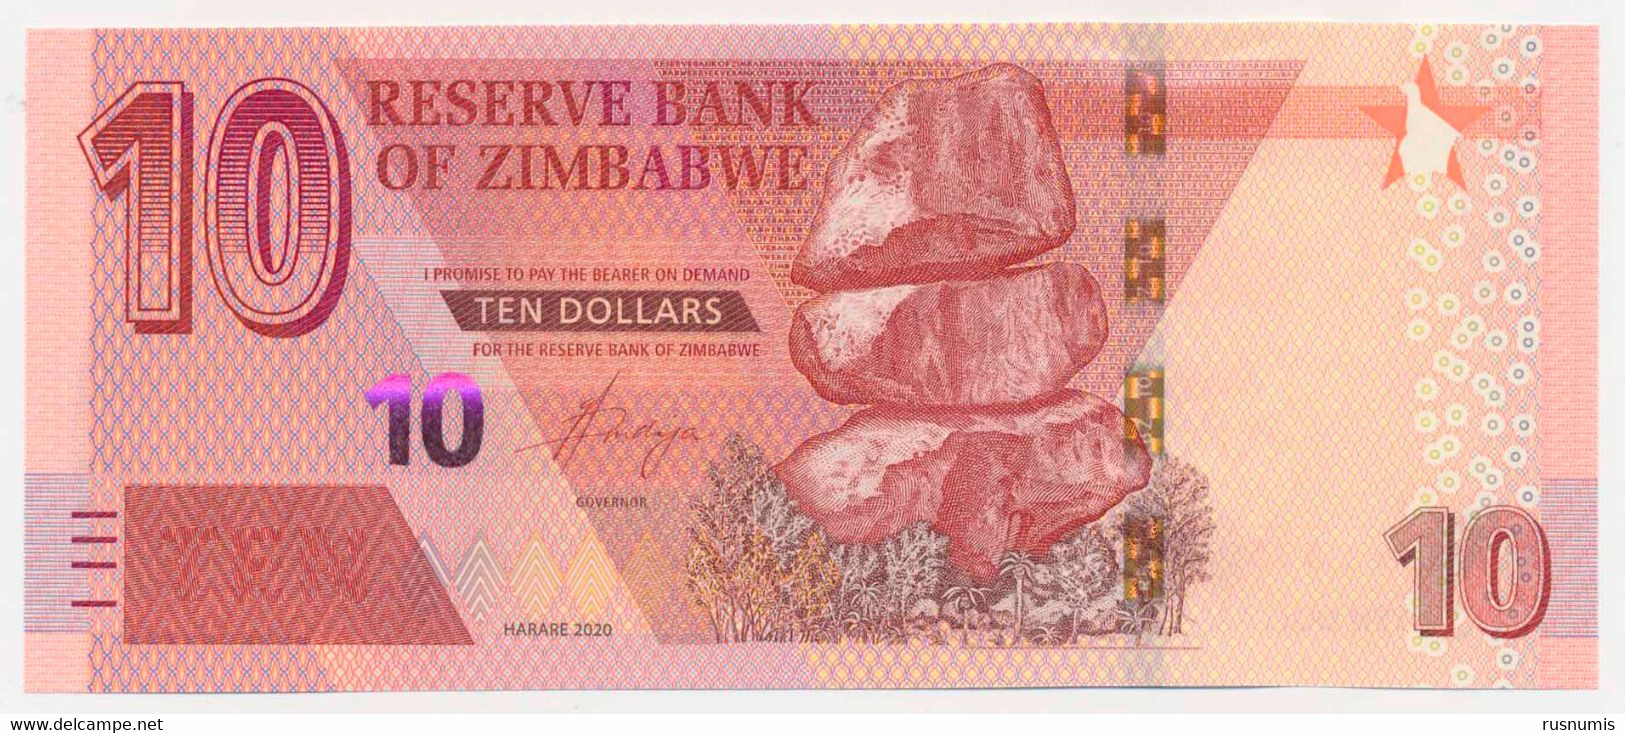 ZIMBABWE 10 DOLLARS PICK 103 CHIREMBA BALANCING ROCK - ANIMALS BUFFALOS 2020 UNC - Zimbabwe